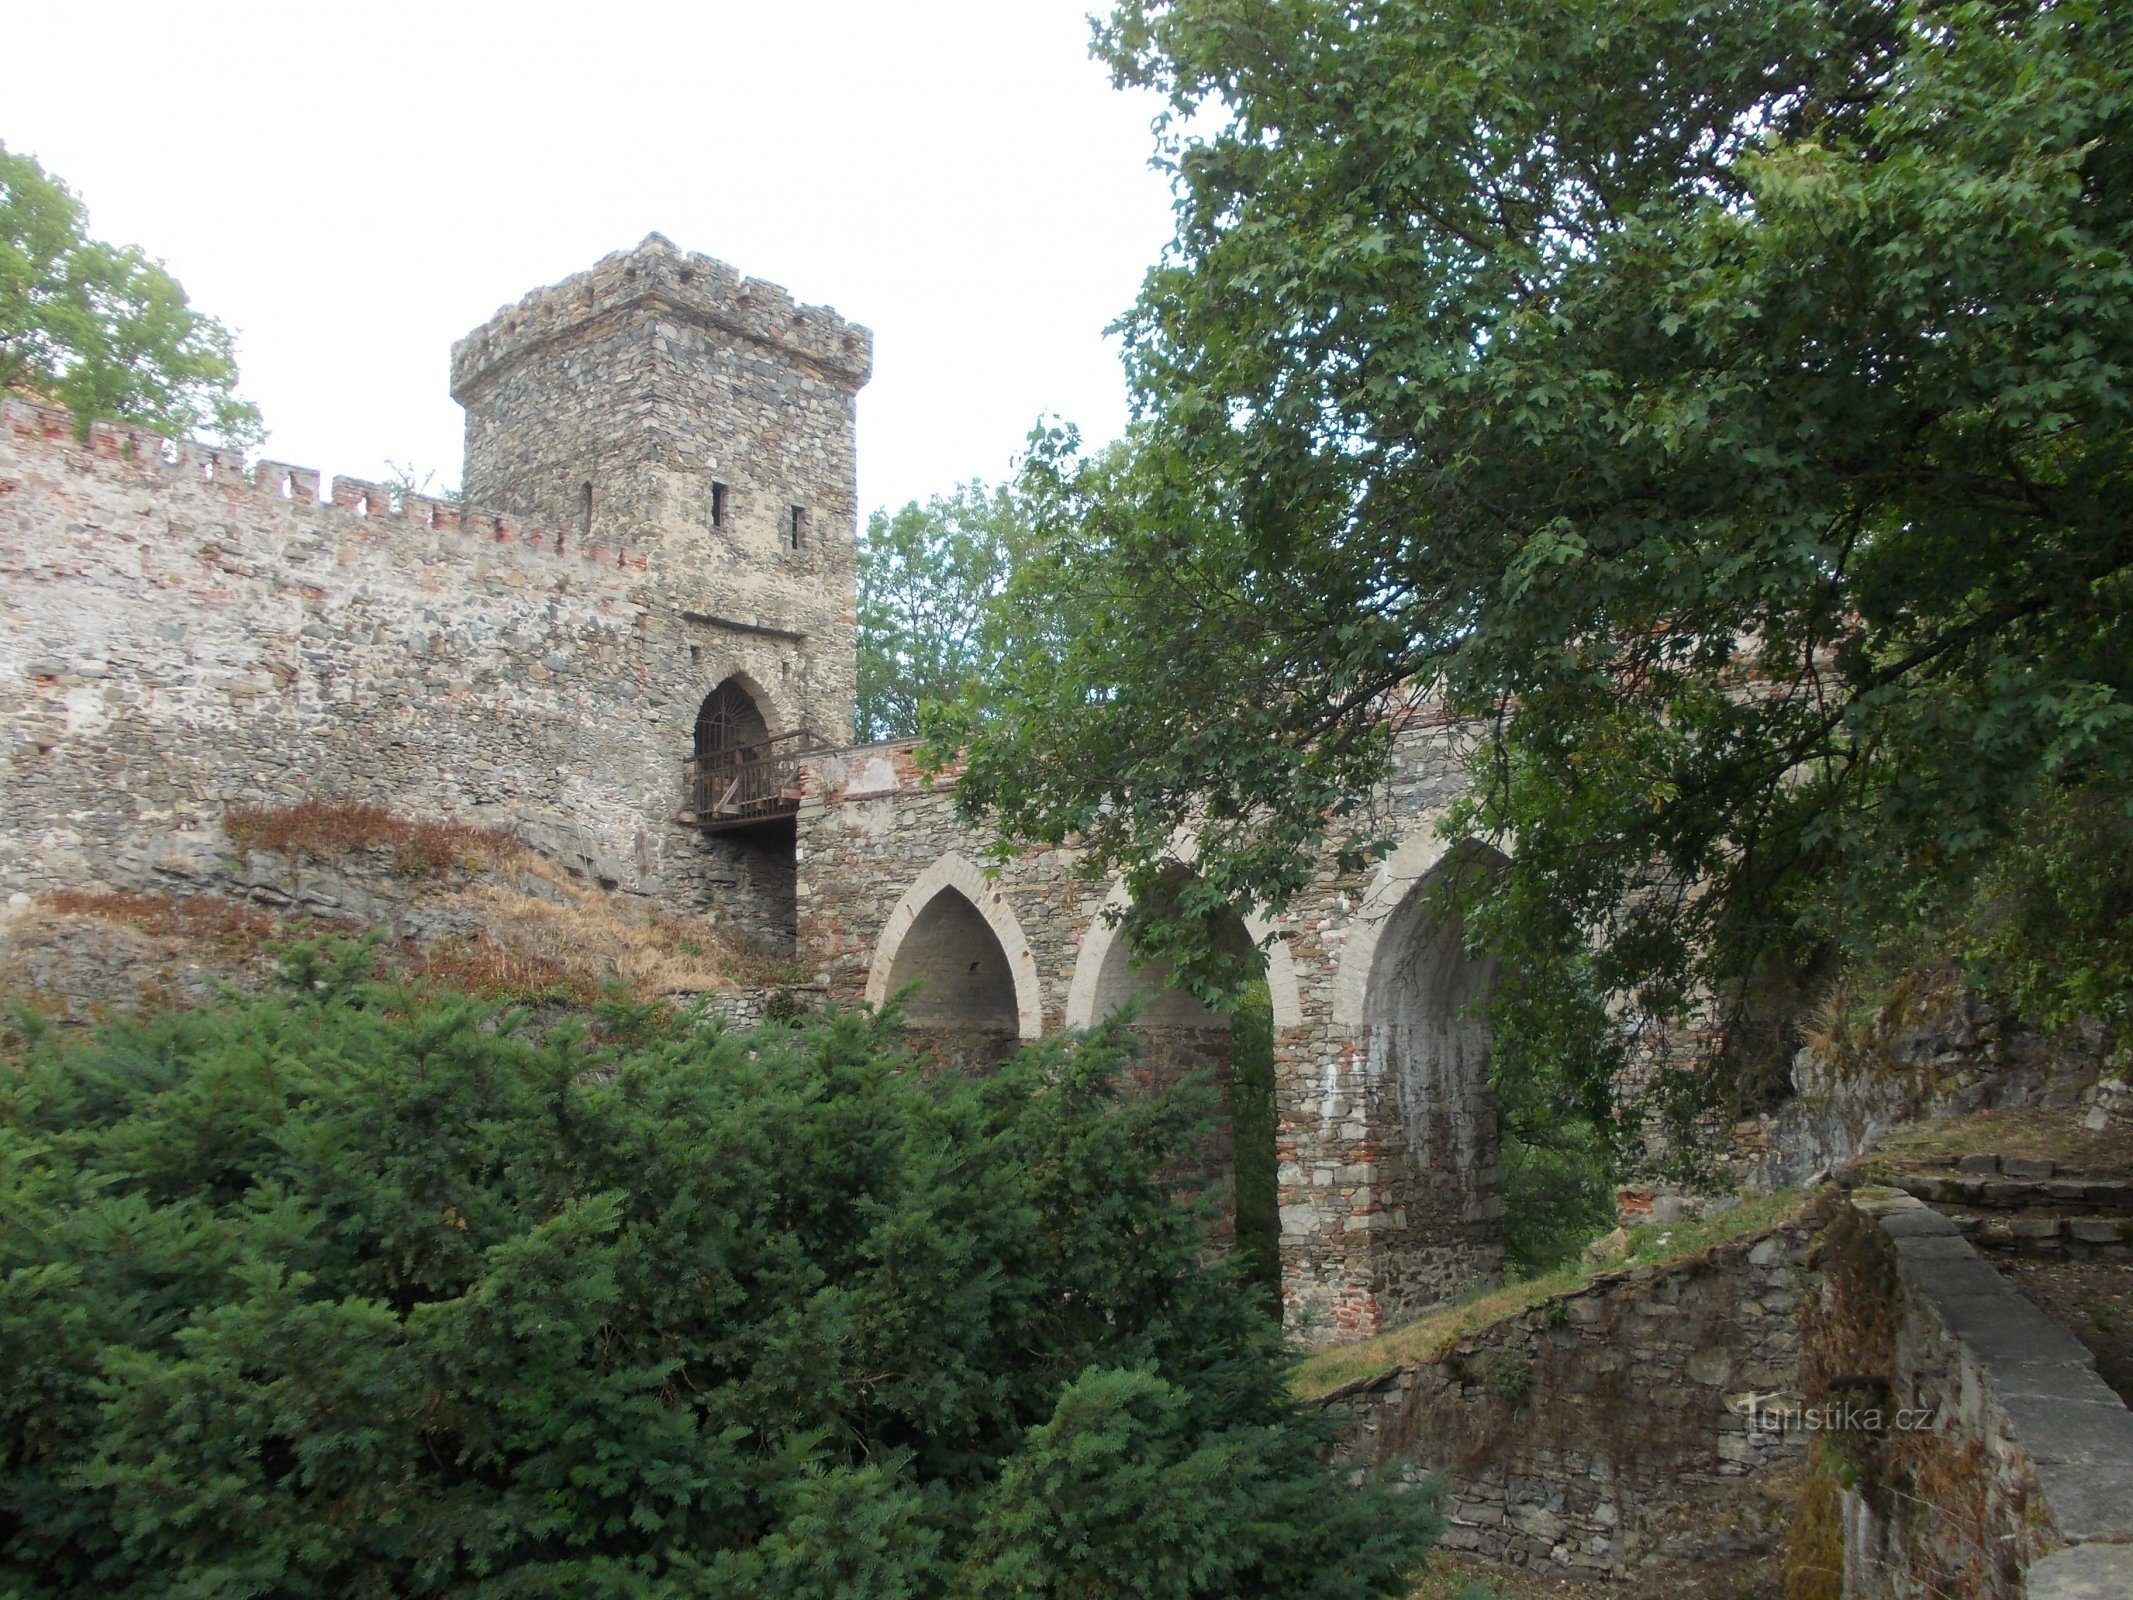 мури замку та під’їзна дорога через міст до замку